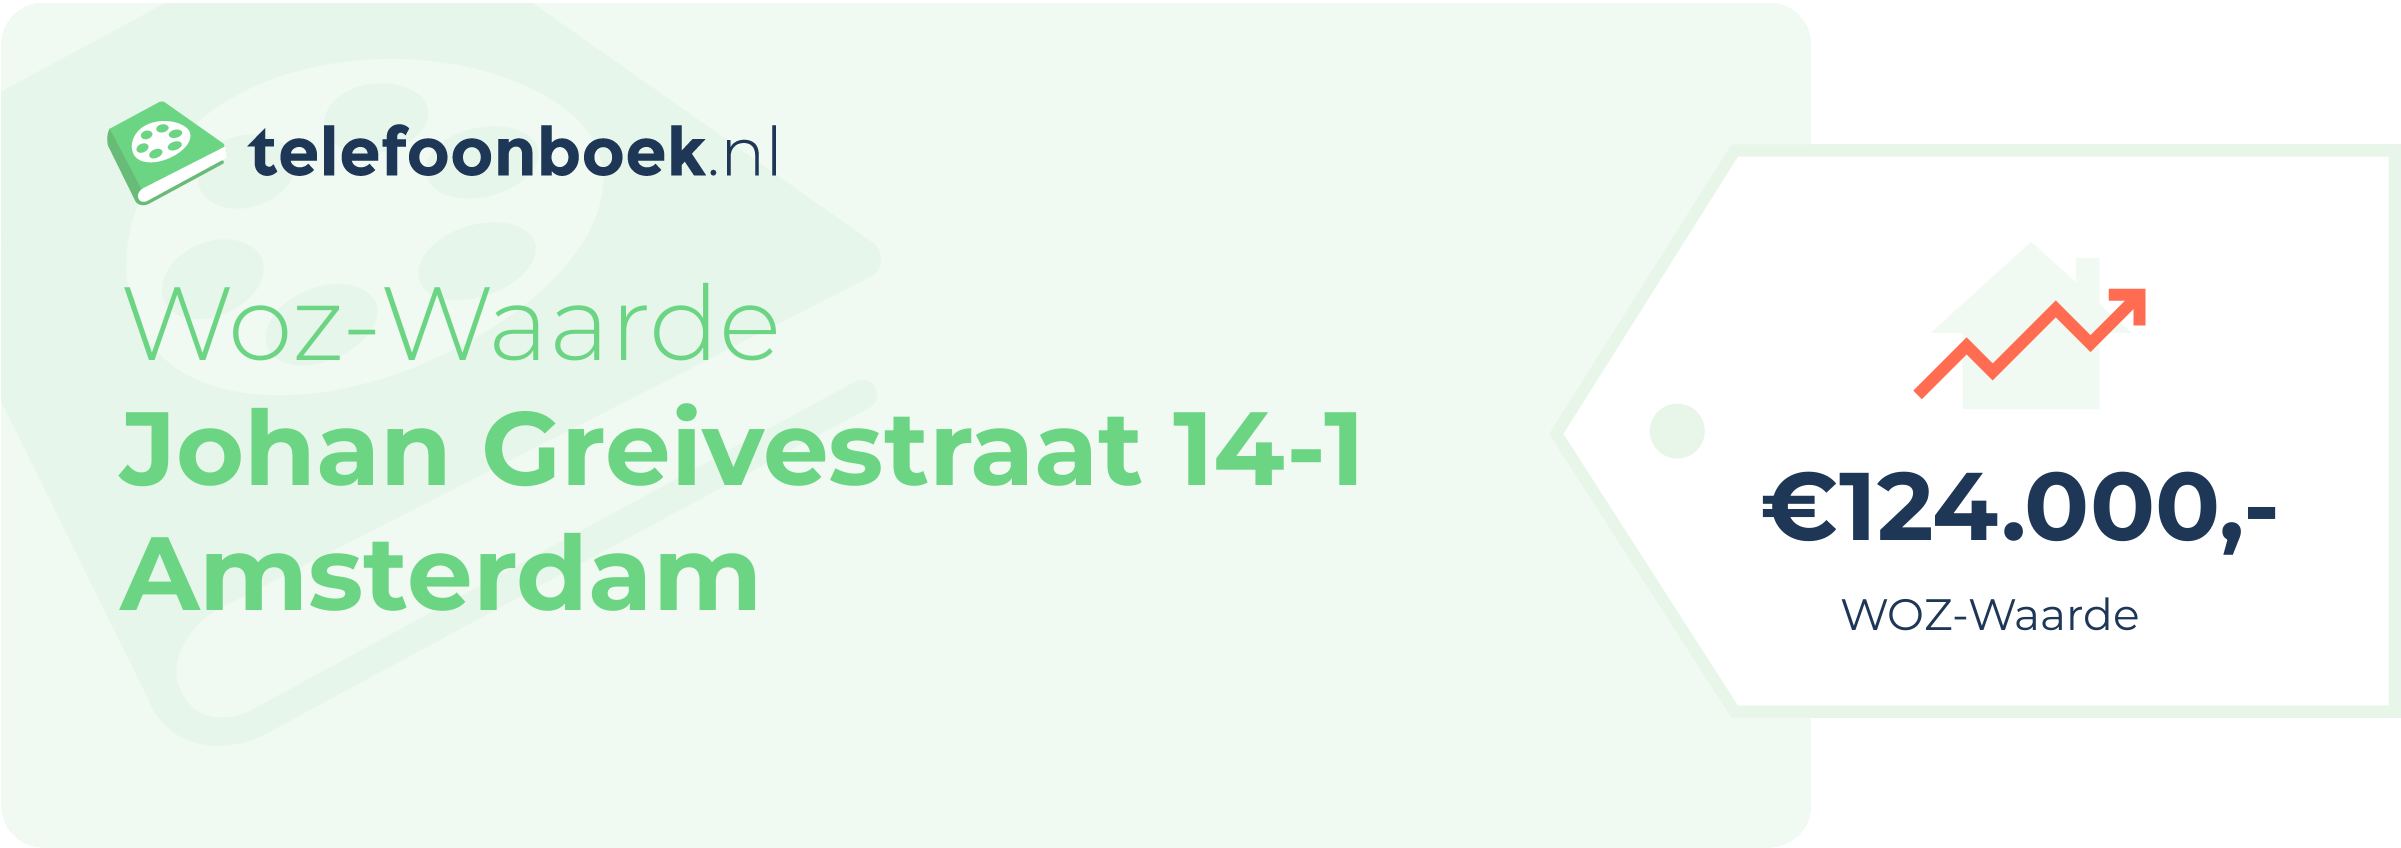 WOZ-waarde Johan Greivestraat 14-1 Amsterdam